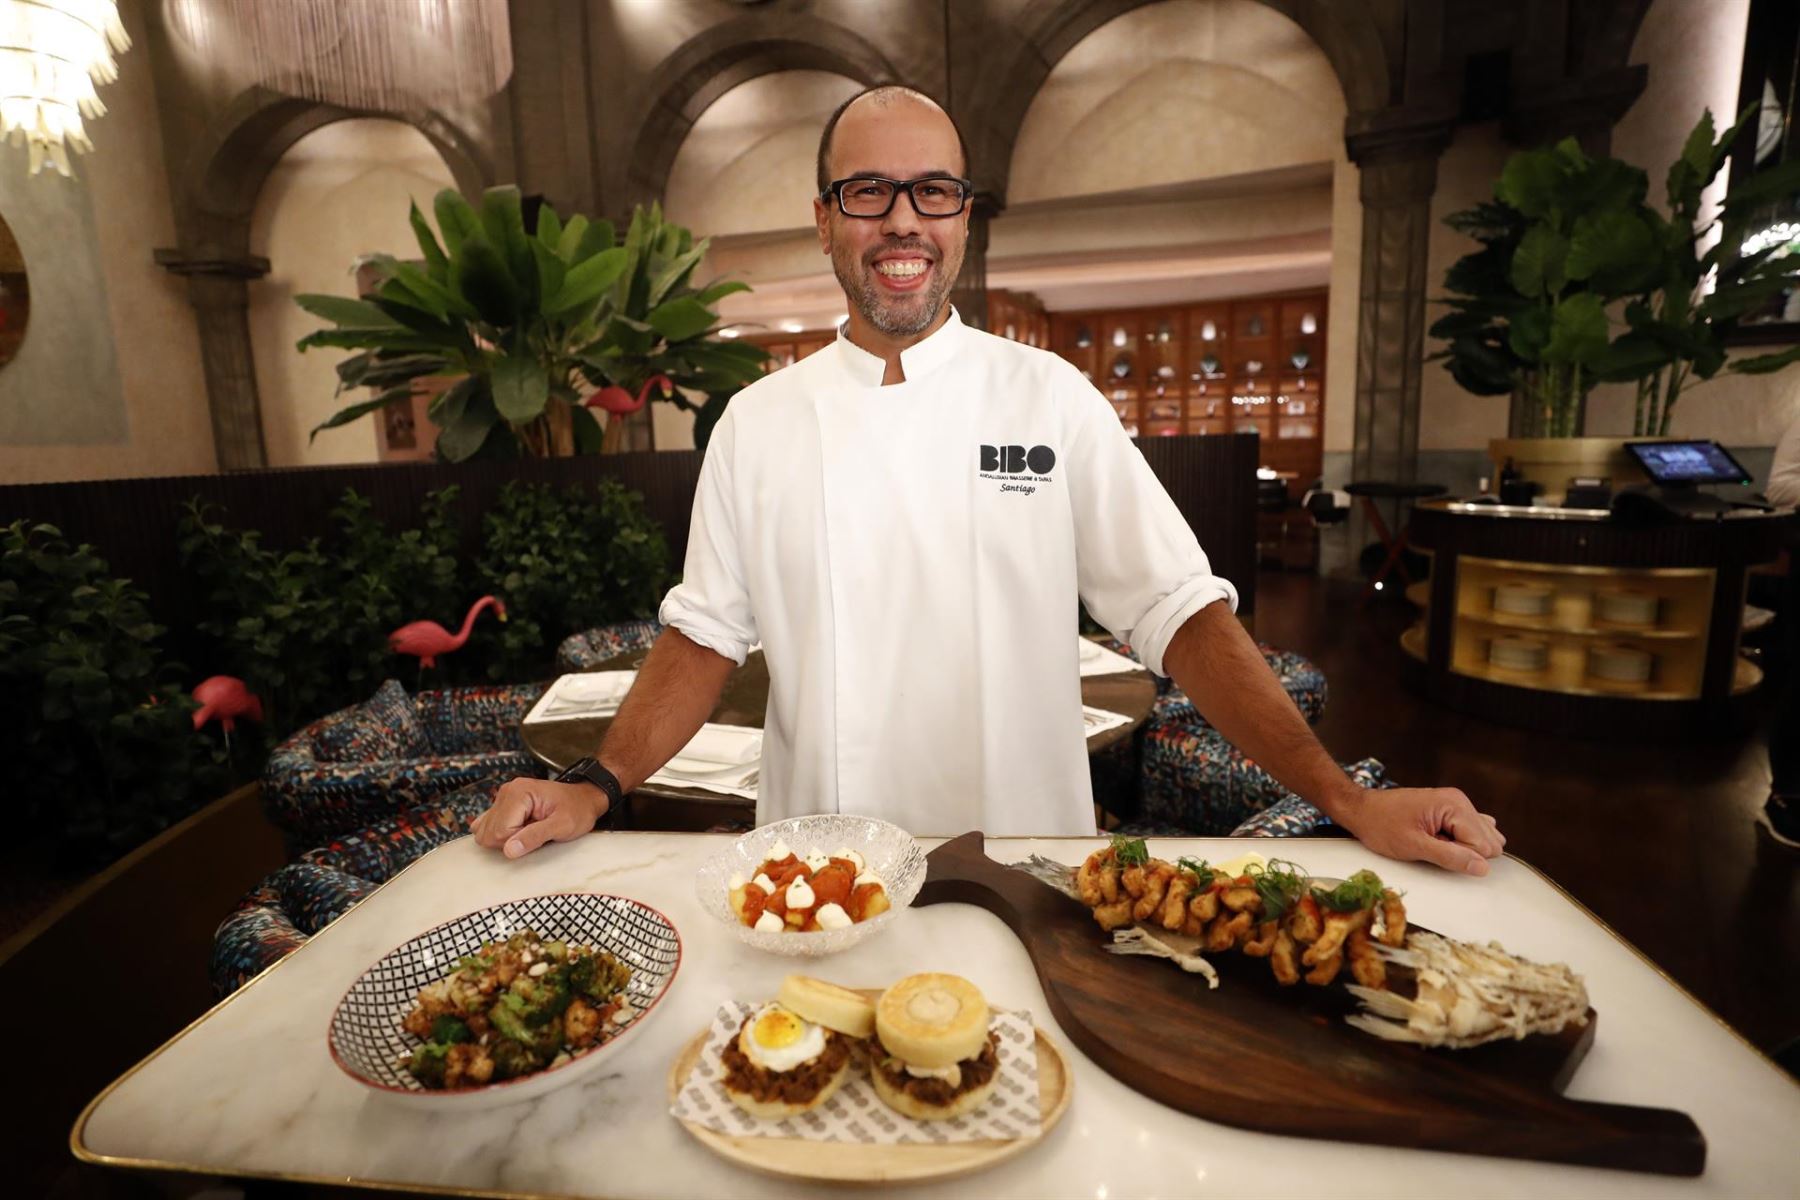 El chef Santiago Guerrero se hace cargo desde hace 3 años de la cocina de BiBo, local del chef estrella Michelin español Dani García, ubicado en el hotel St. Regis de Doha triunfa con sus croquetas de choco y de puchero, la tortilla de patatas, las patatas bravas con un toque especia.